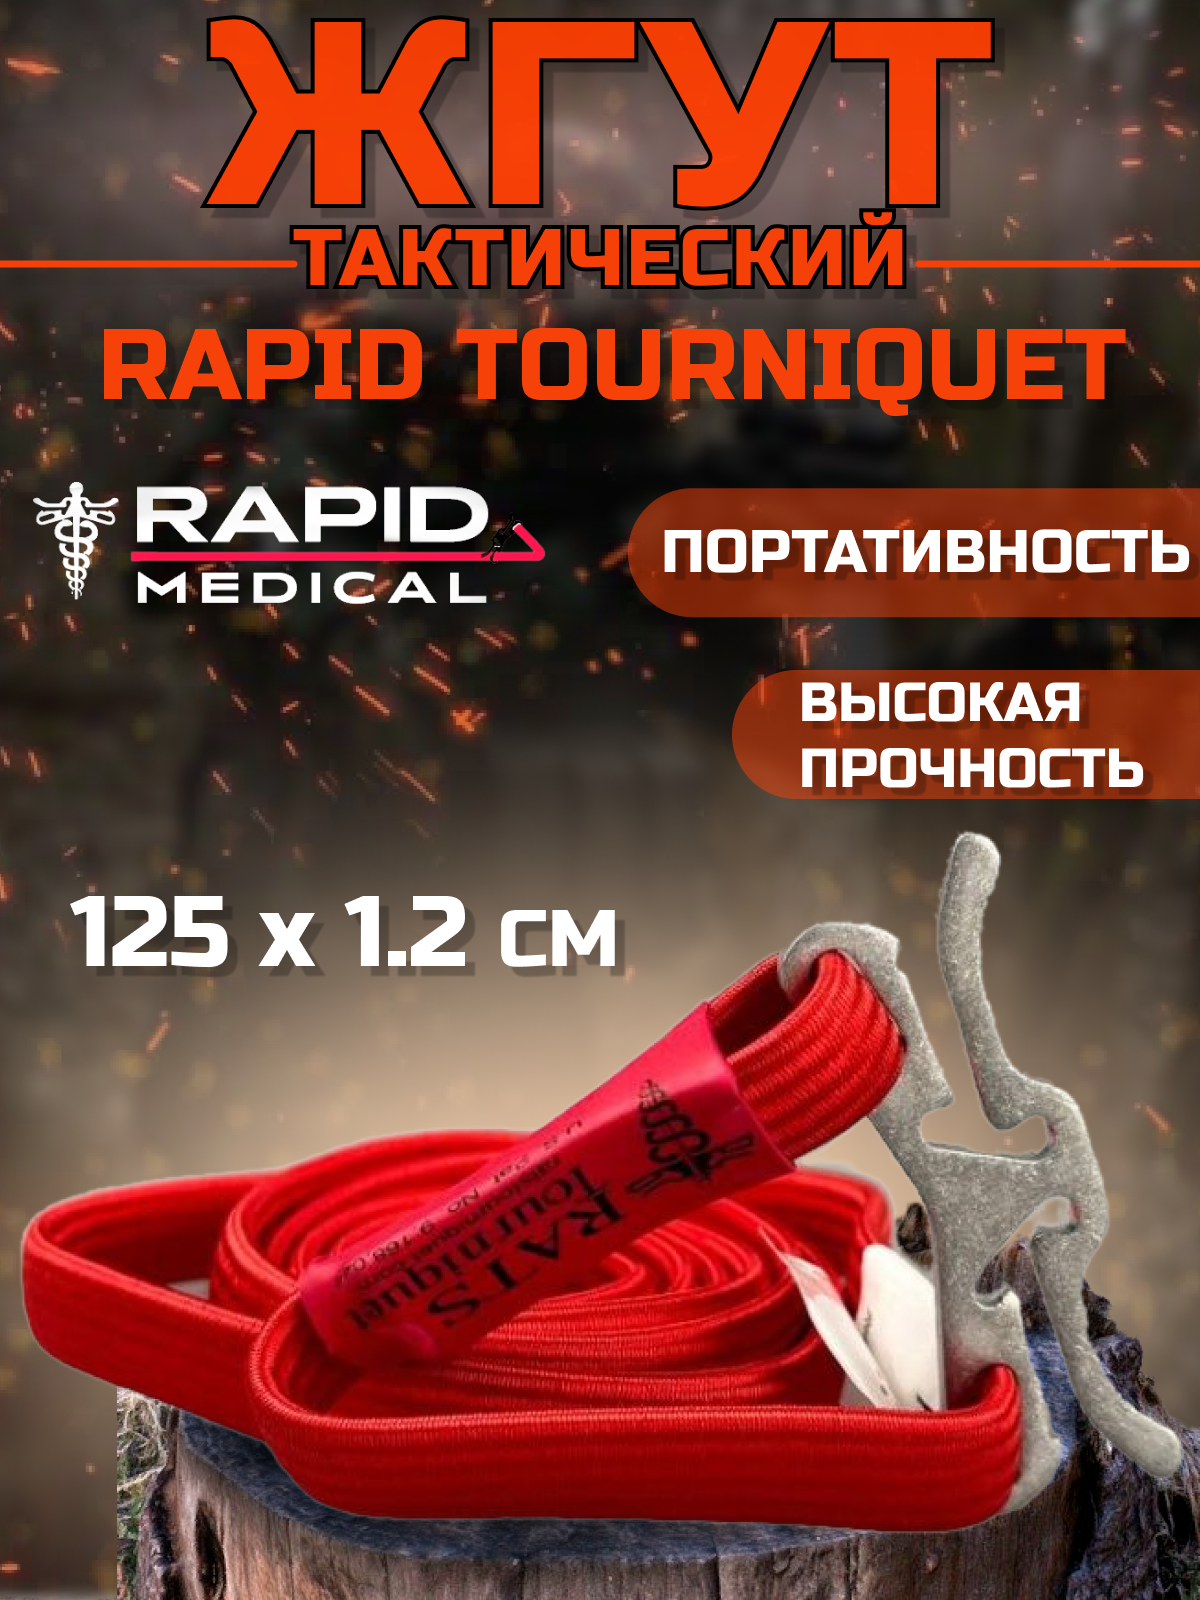 R.A.T.S / Жгут медицинский тактический кровоостанавливающий красный 125 см - 1 шт